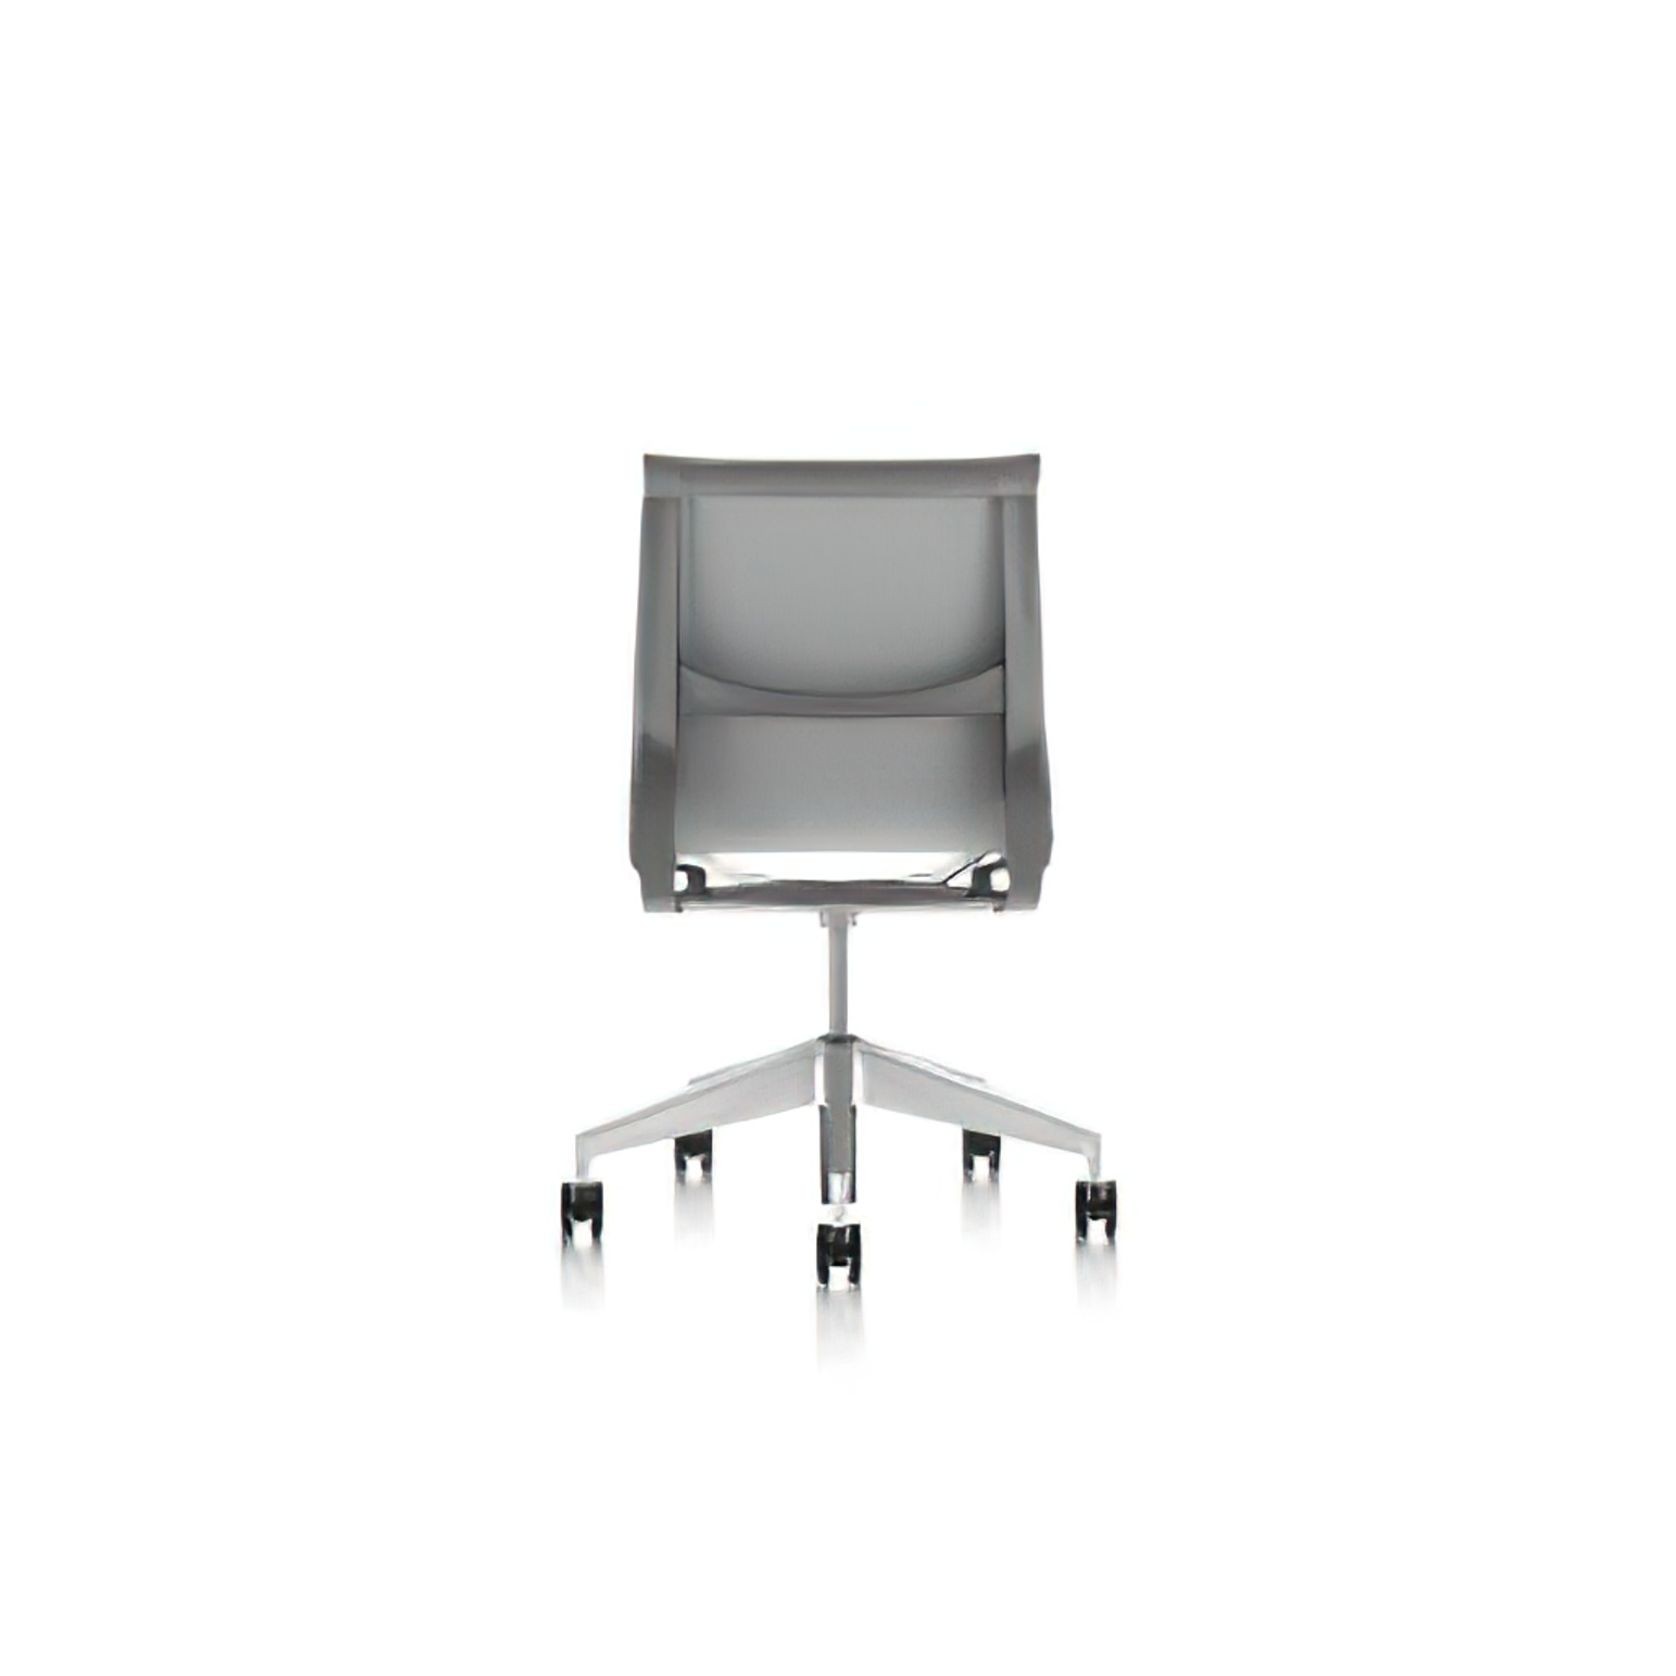 Setu Upholstered Chair by Herman Miller gallery detail image